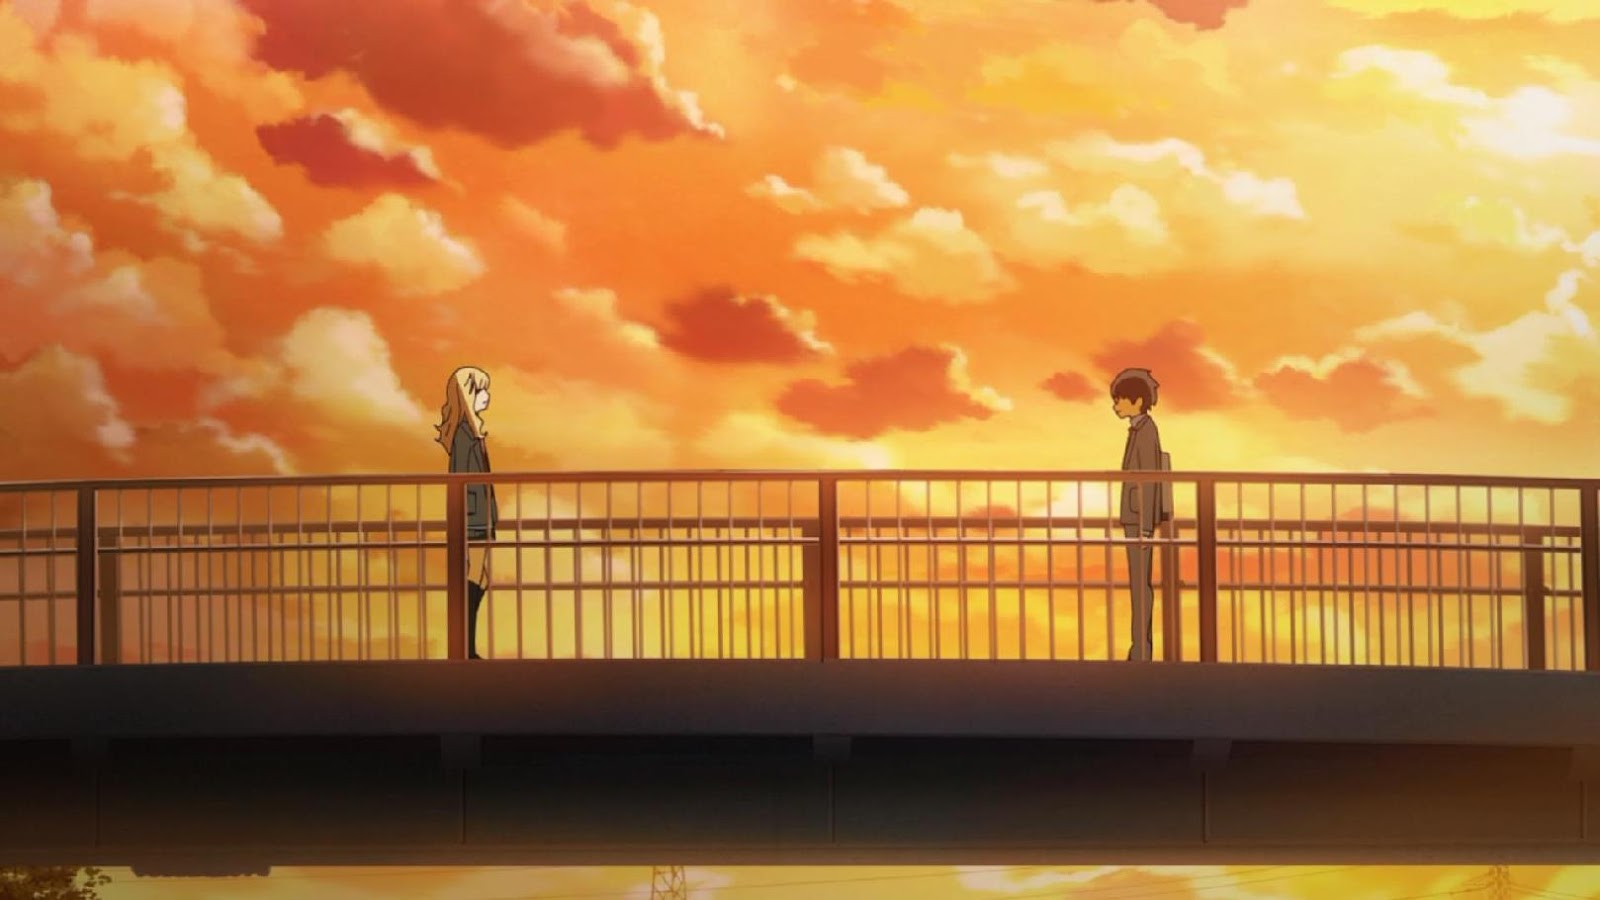 Rewatch] Shigatsu wa Kimi no Uso / Your Lie in April - Episode 14  Discussion : r/anime